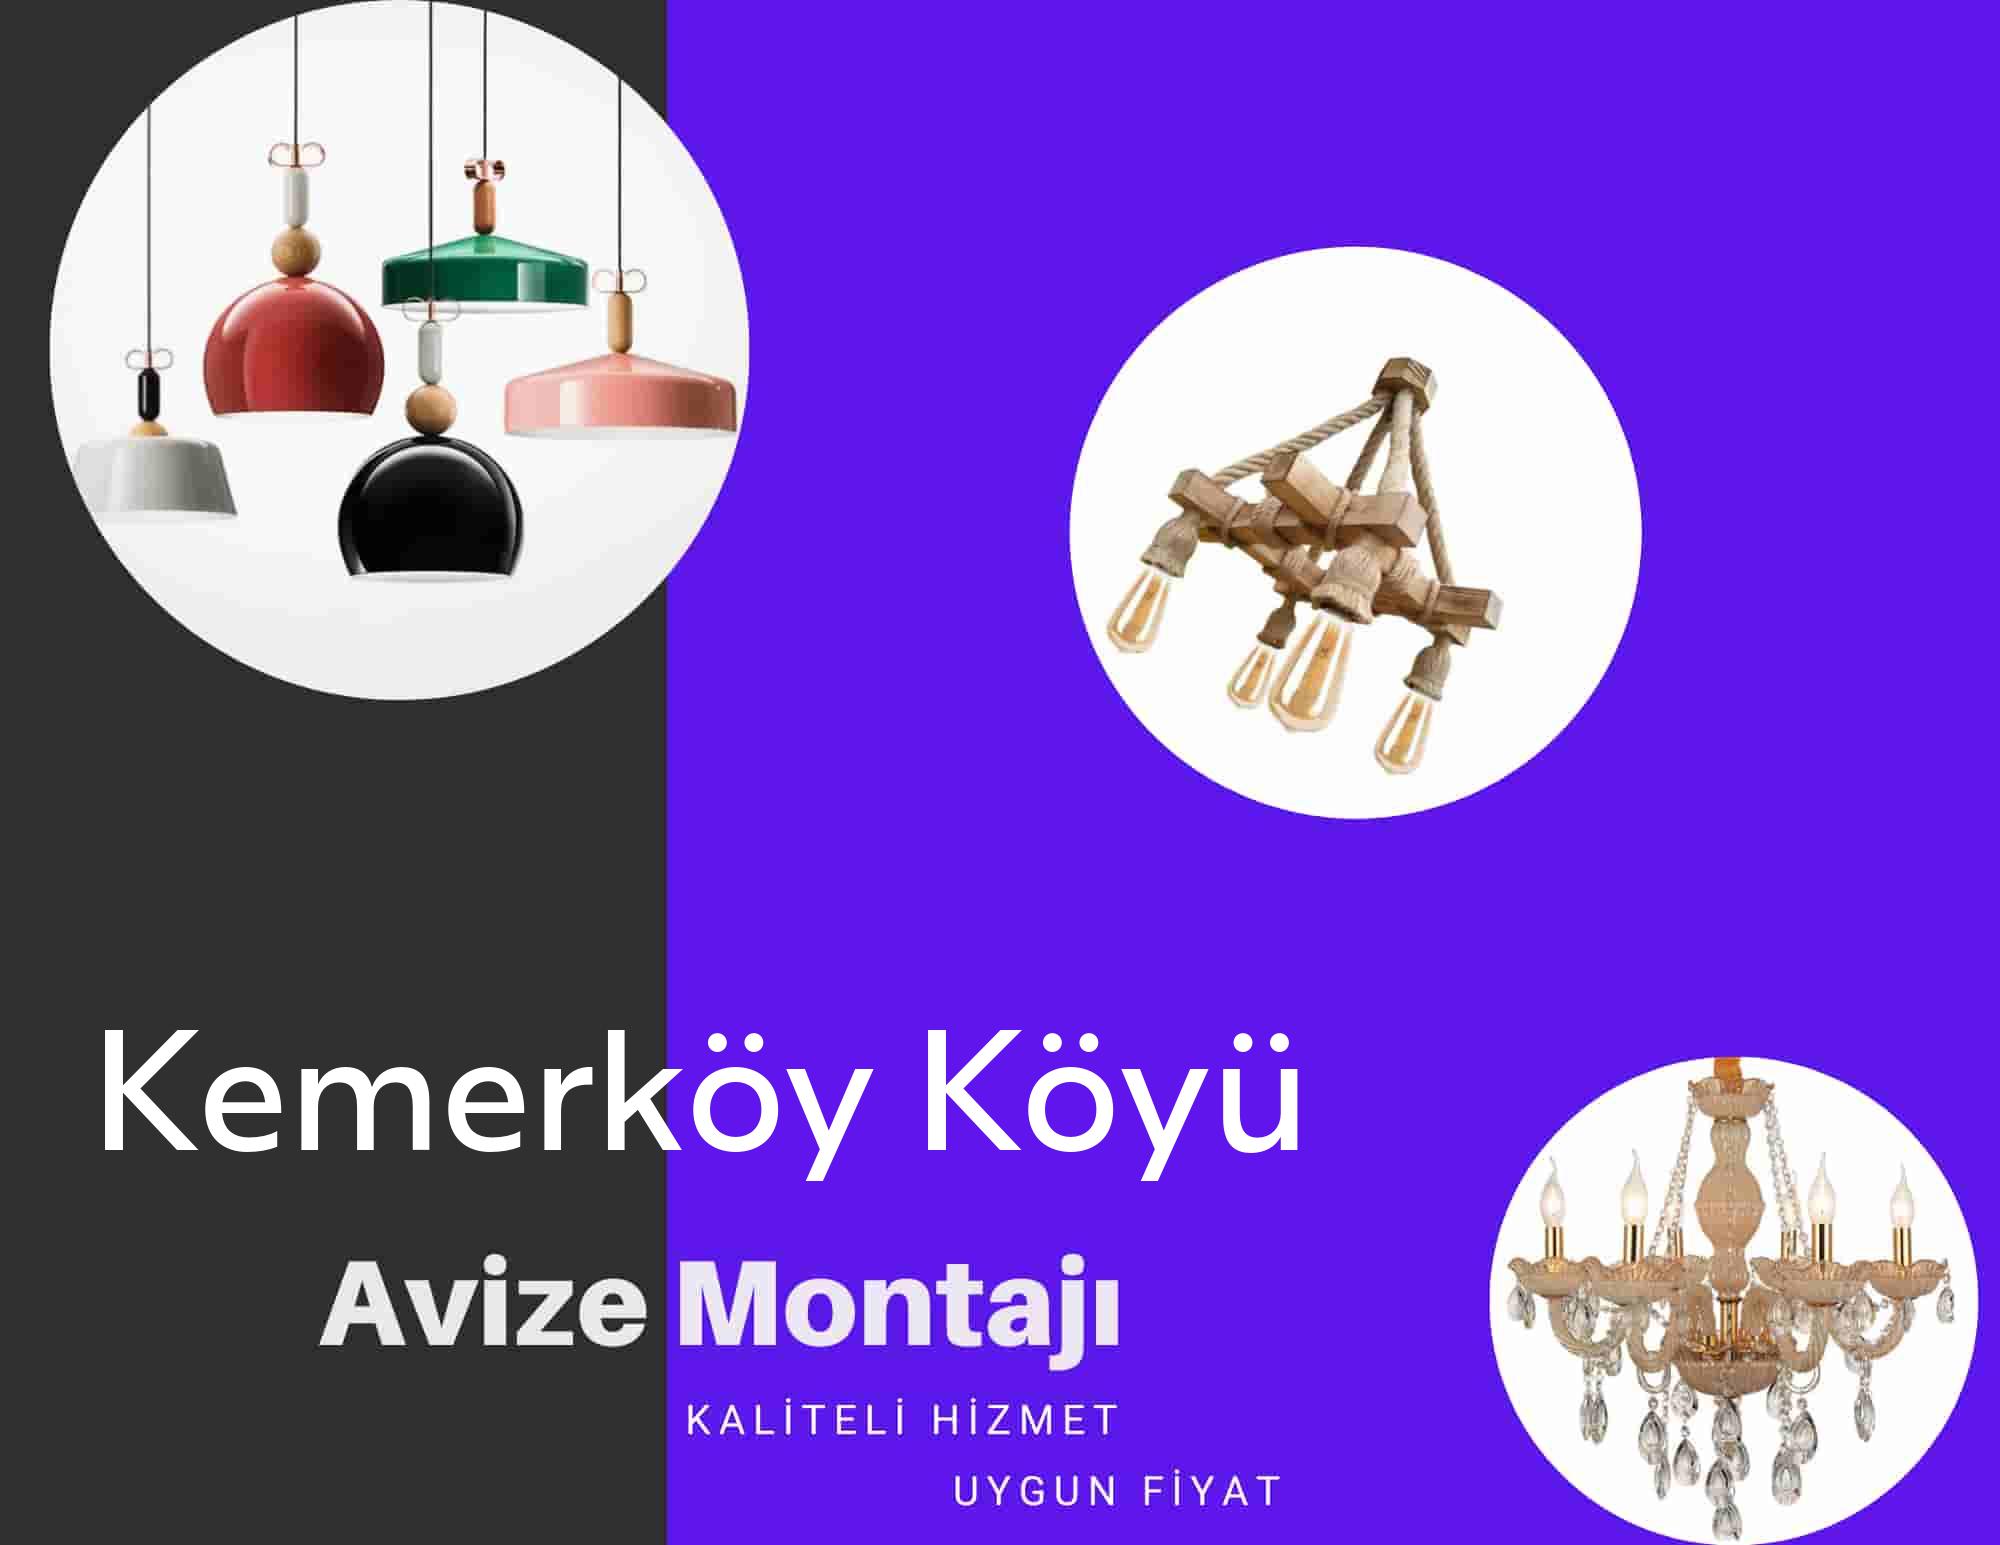 Kemerköy Köyüde avize montajı yapan yerler arıyorsanız elektrikcicagir anında size profesyonel avize montajı ustasını yönlendirir.